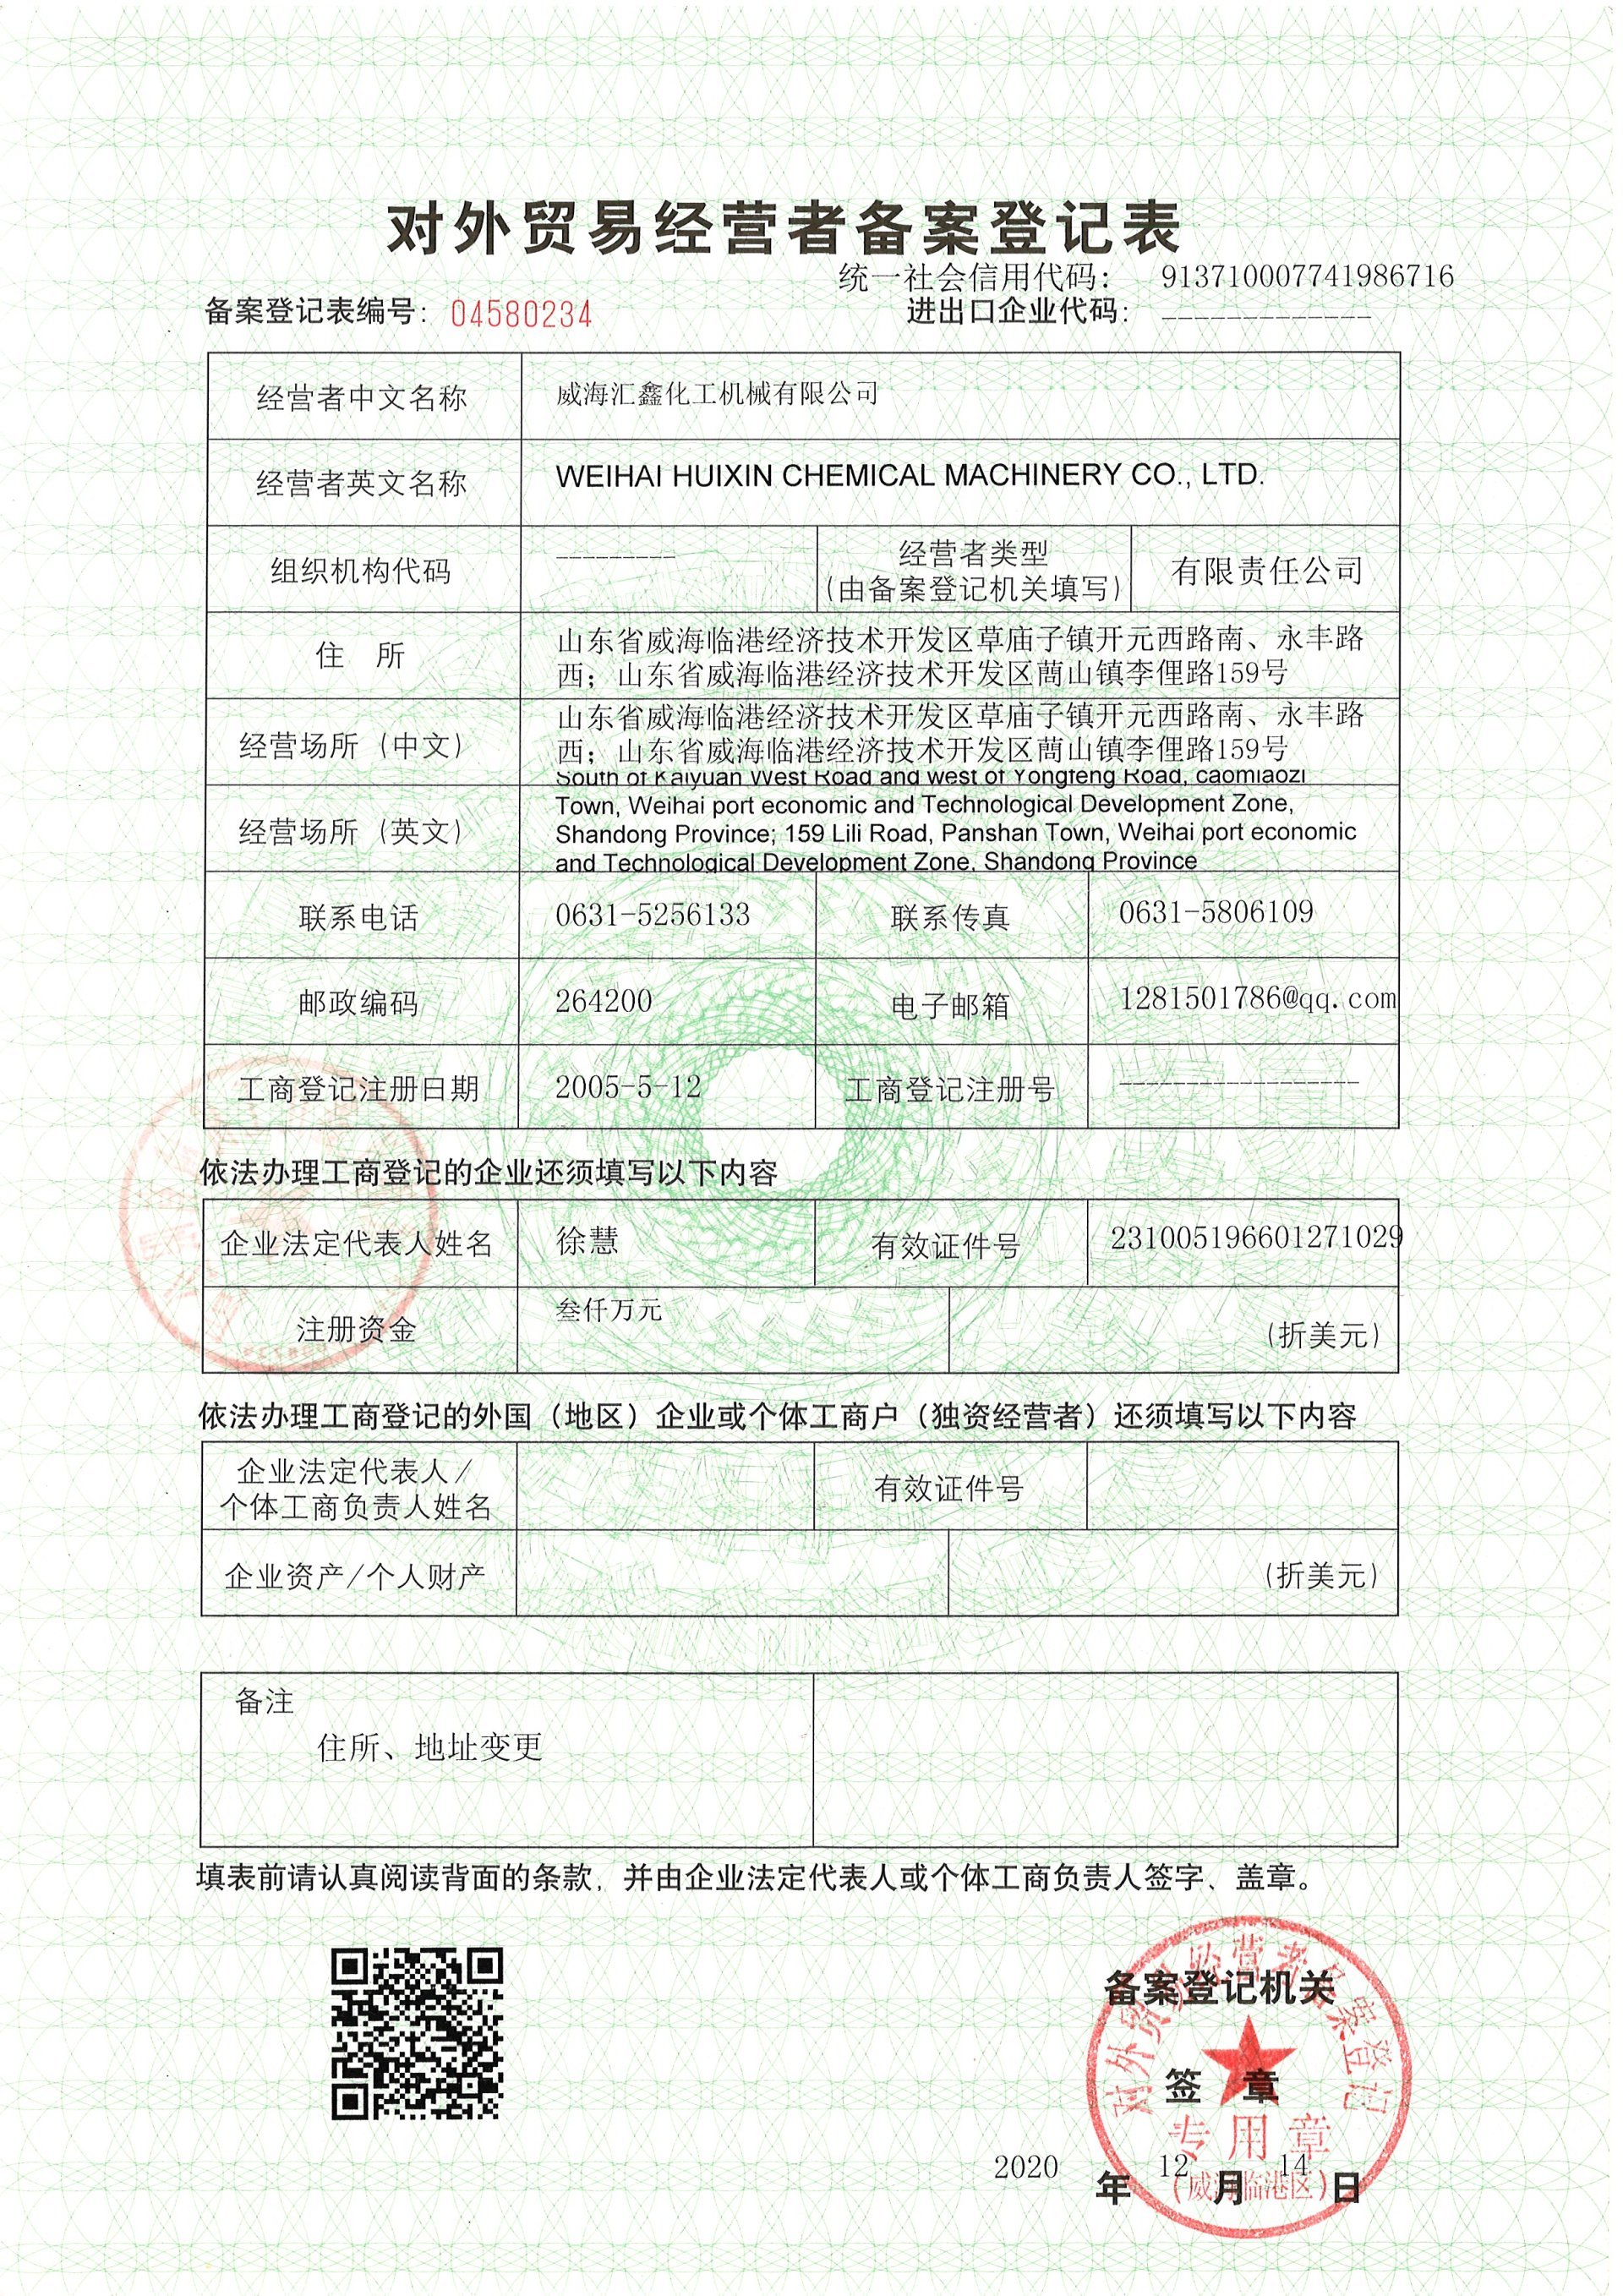 Import & Export Certificate